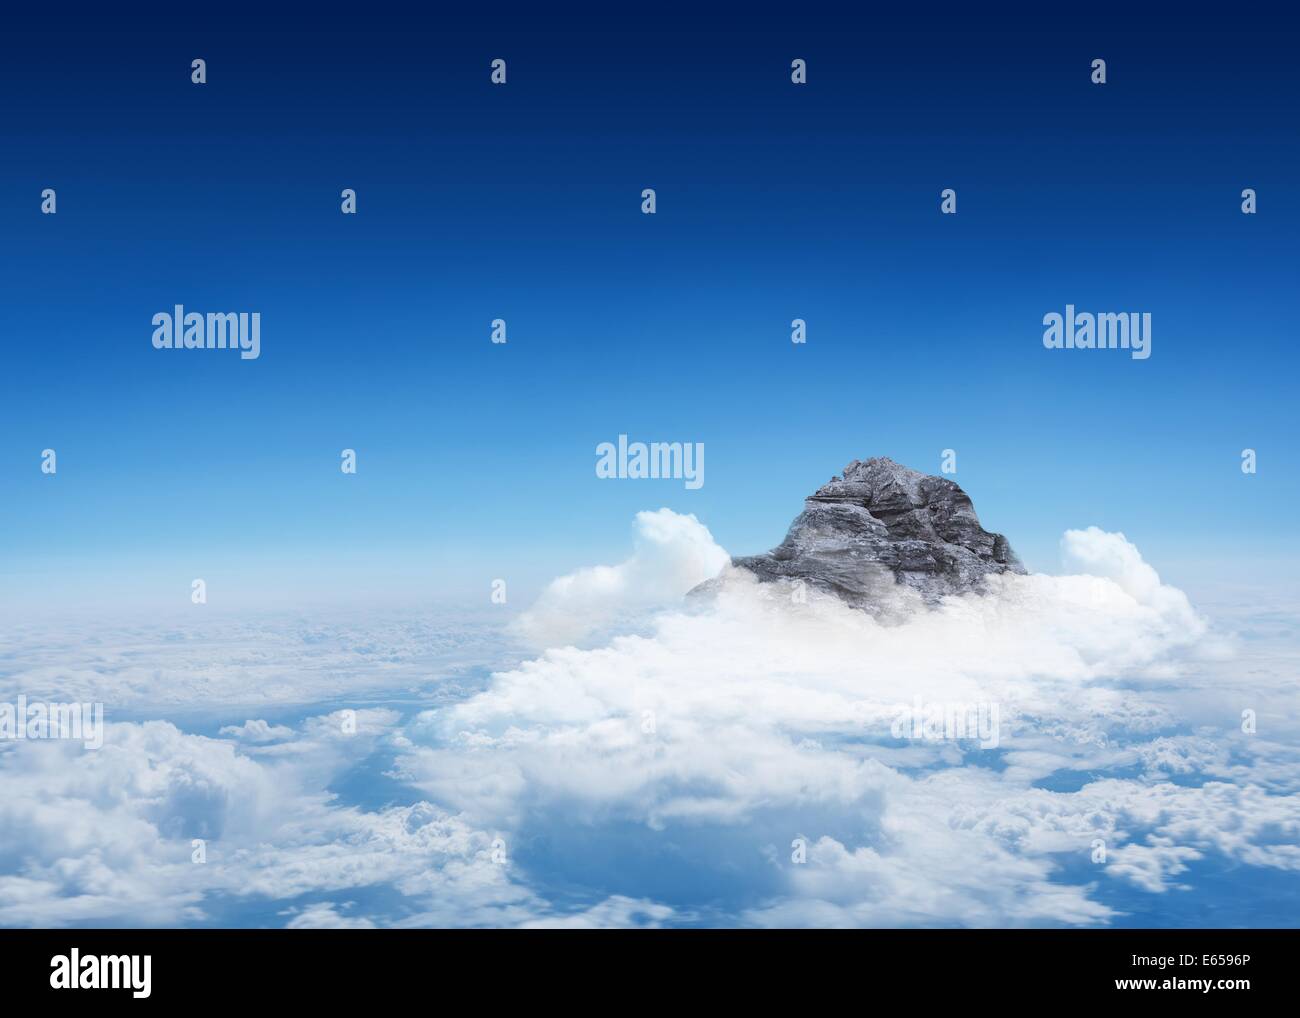 Mountain peak through the clouds Stock Photo